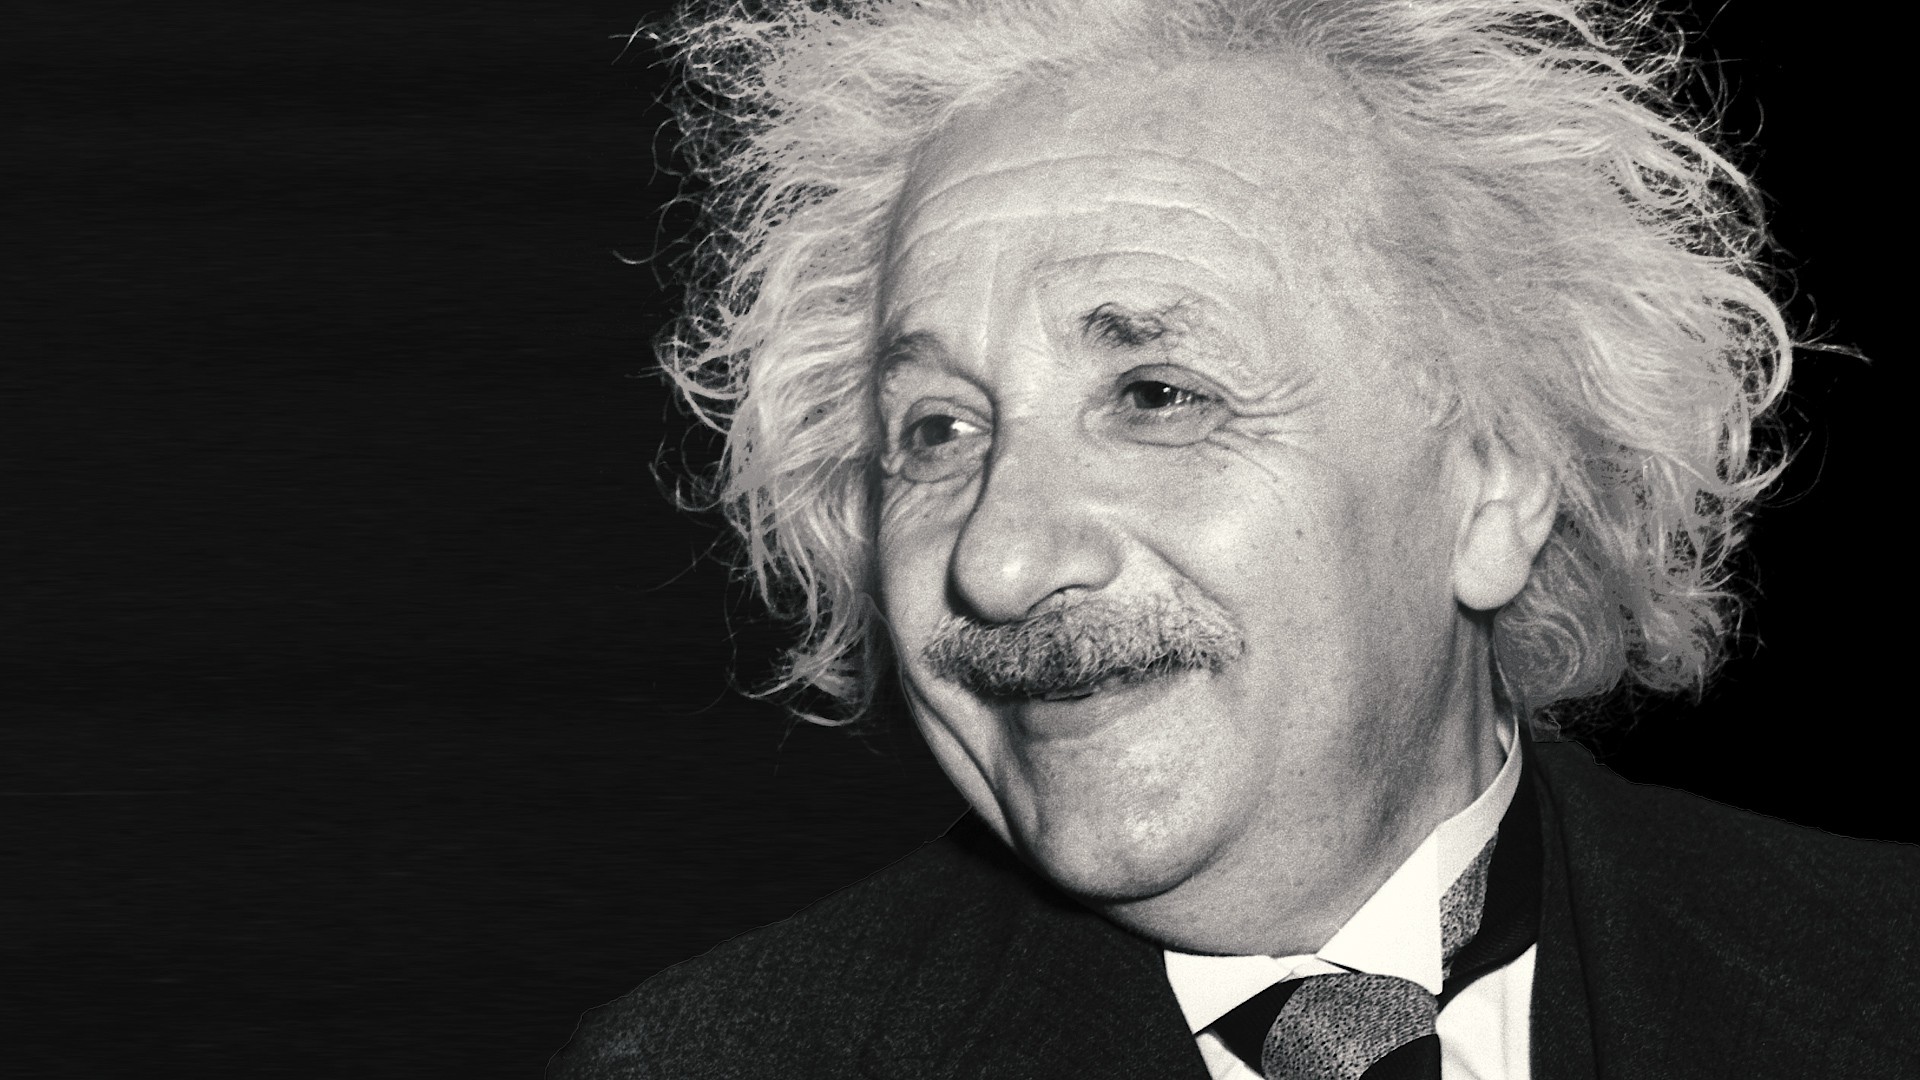 Ngắm đồng hồ suốt 14 năm, tưởng điên rồ nhưng đó là cách để chứng minh một lí thuyết của Einstein - Ảnh 1.